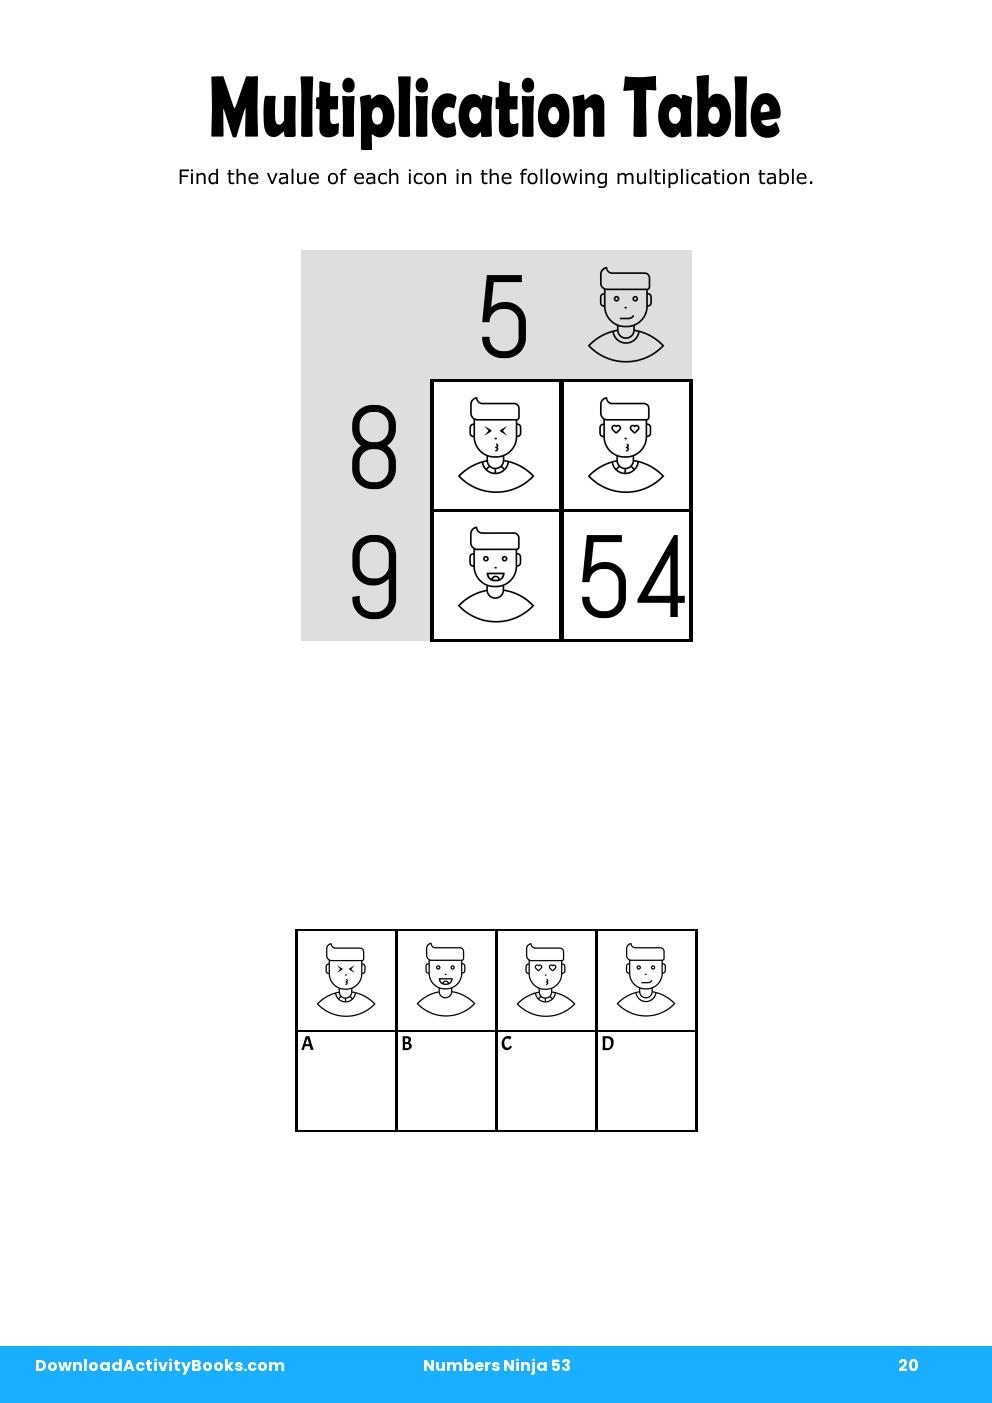 Multiplication Table in Numbers Ninja 53